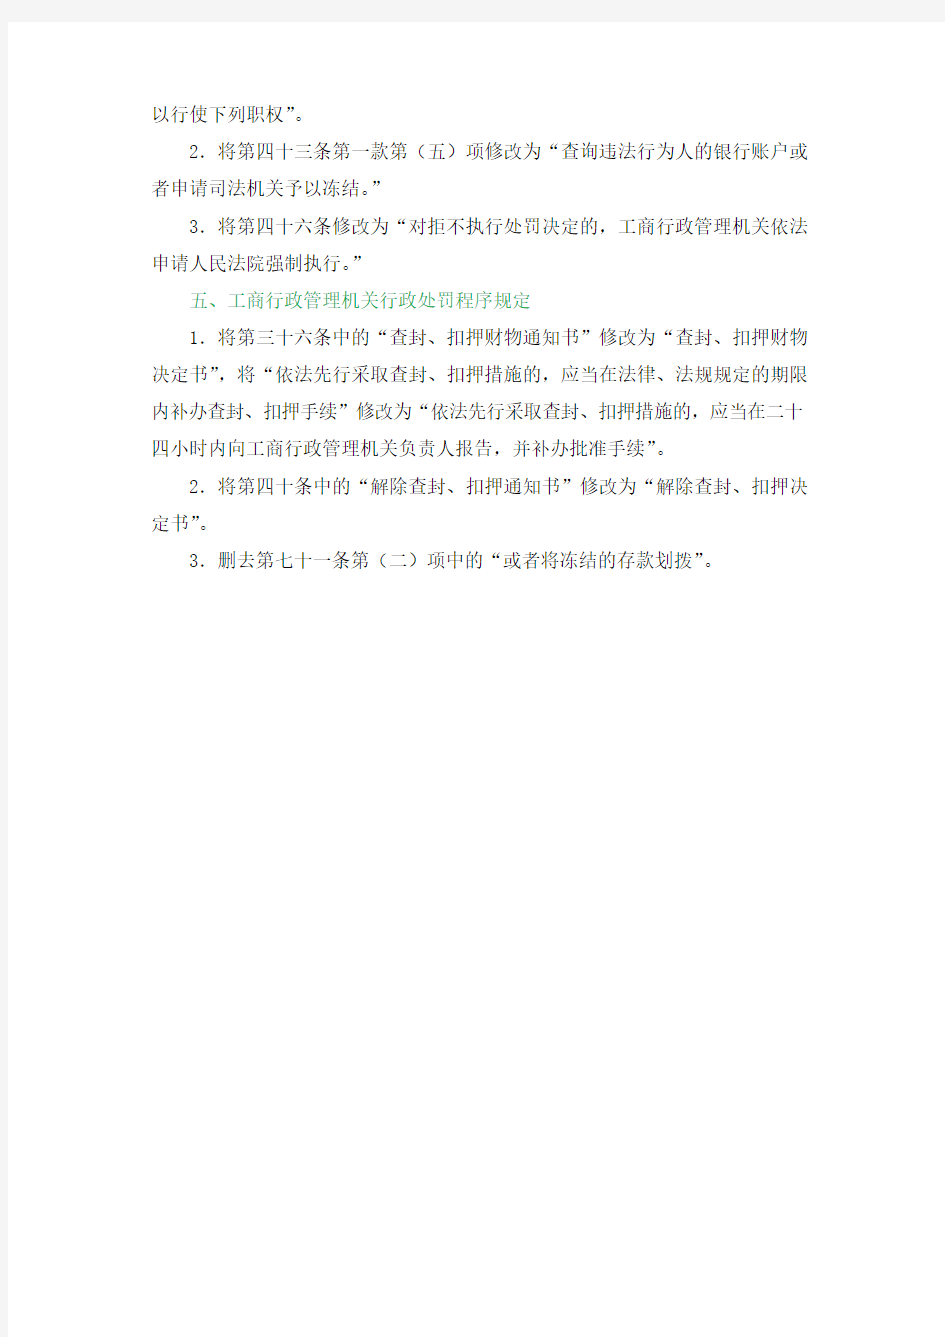 关于按照《中华人民共和国行政强制法》修改有关规章的决定(工商总局令第58号)